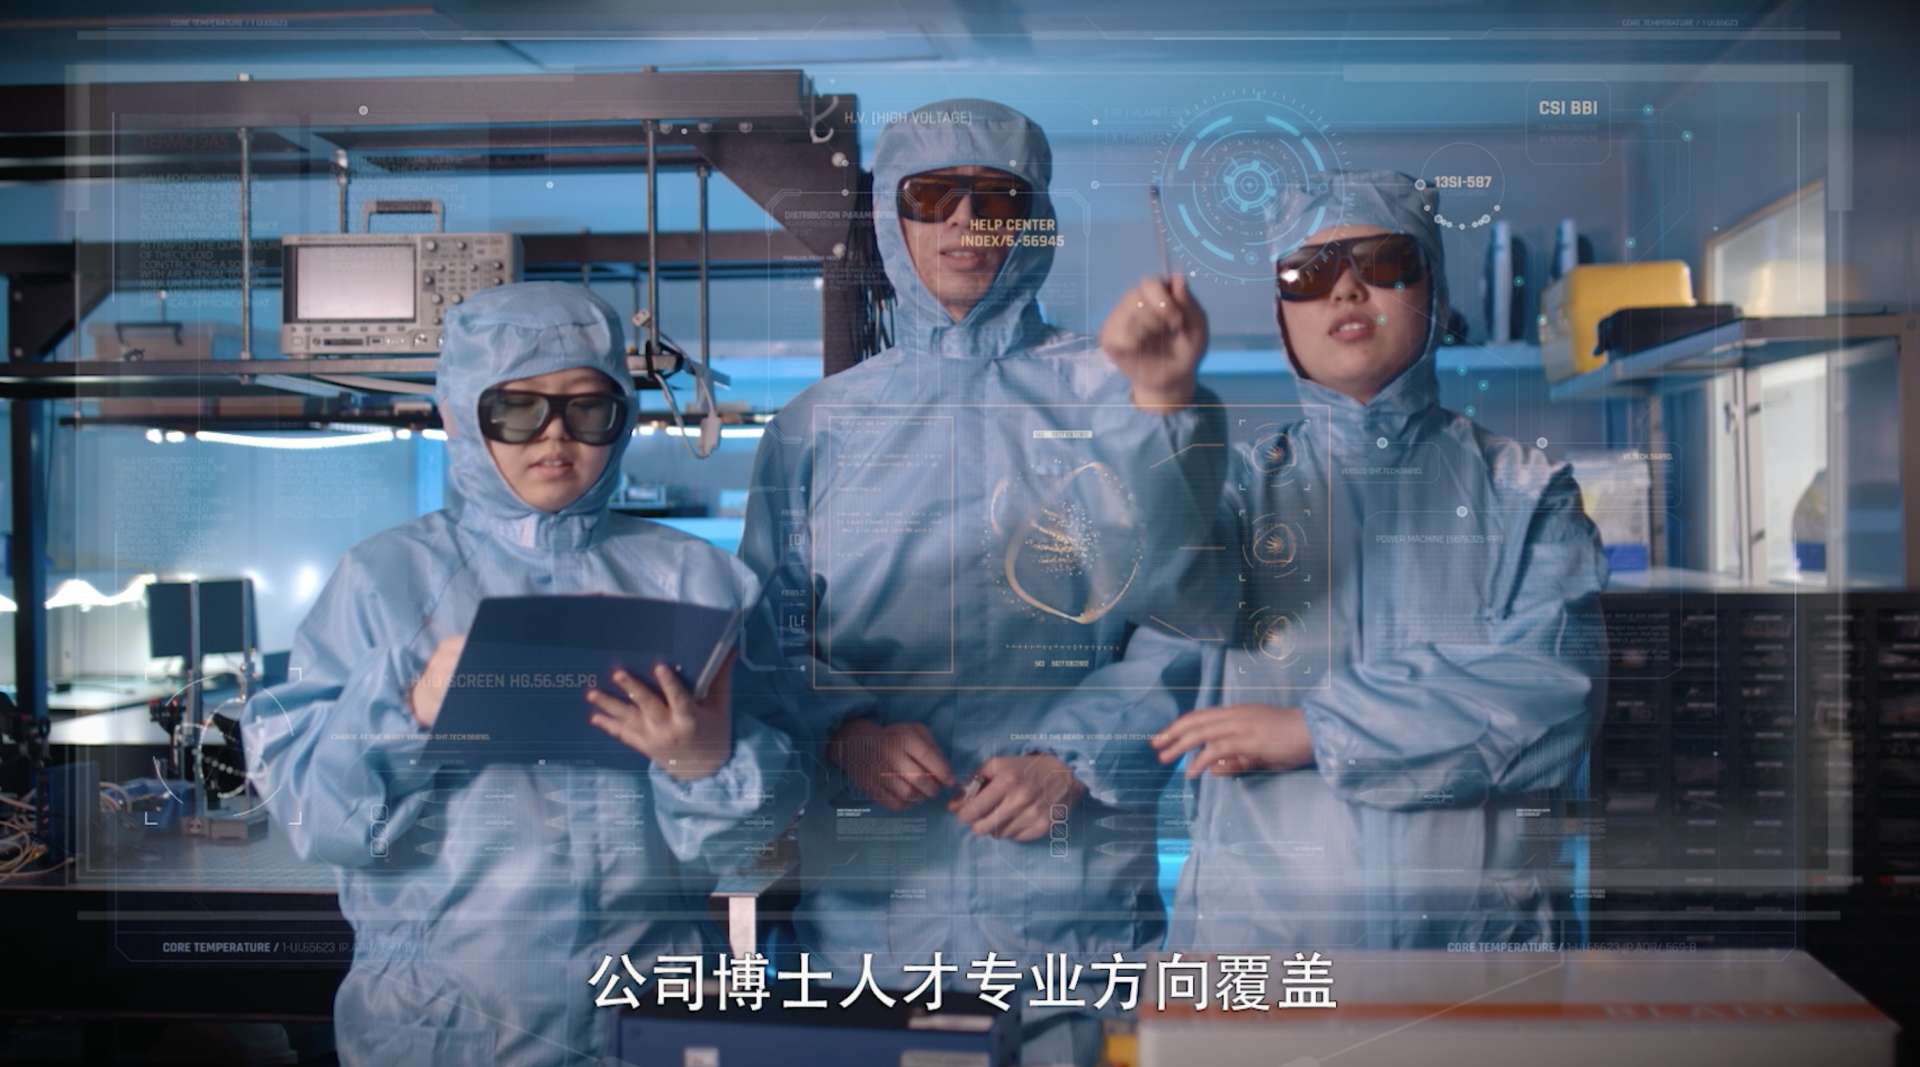 南京激光高科技企业宣传片